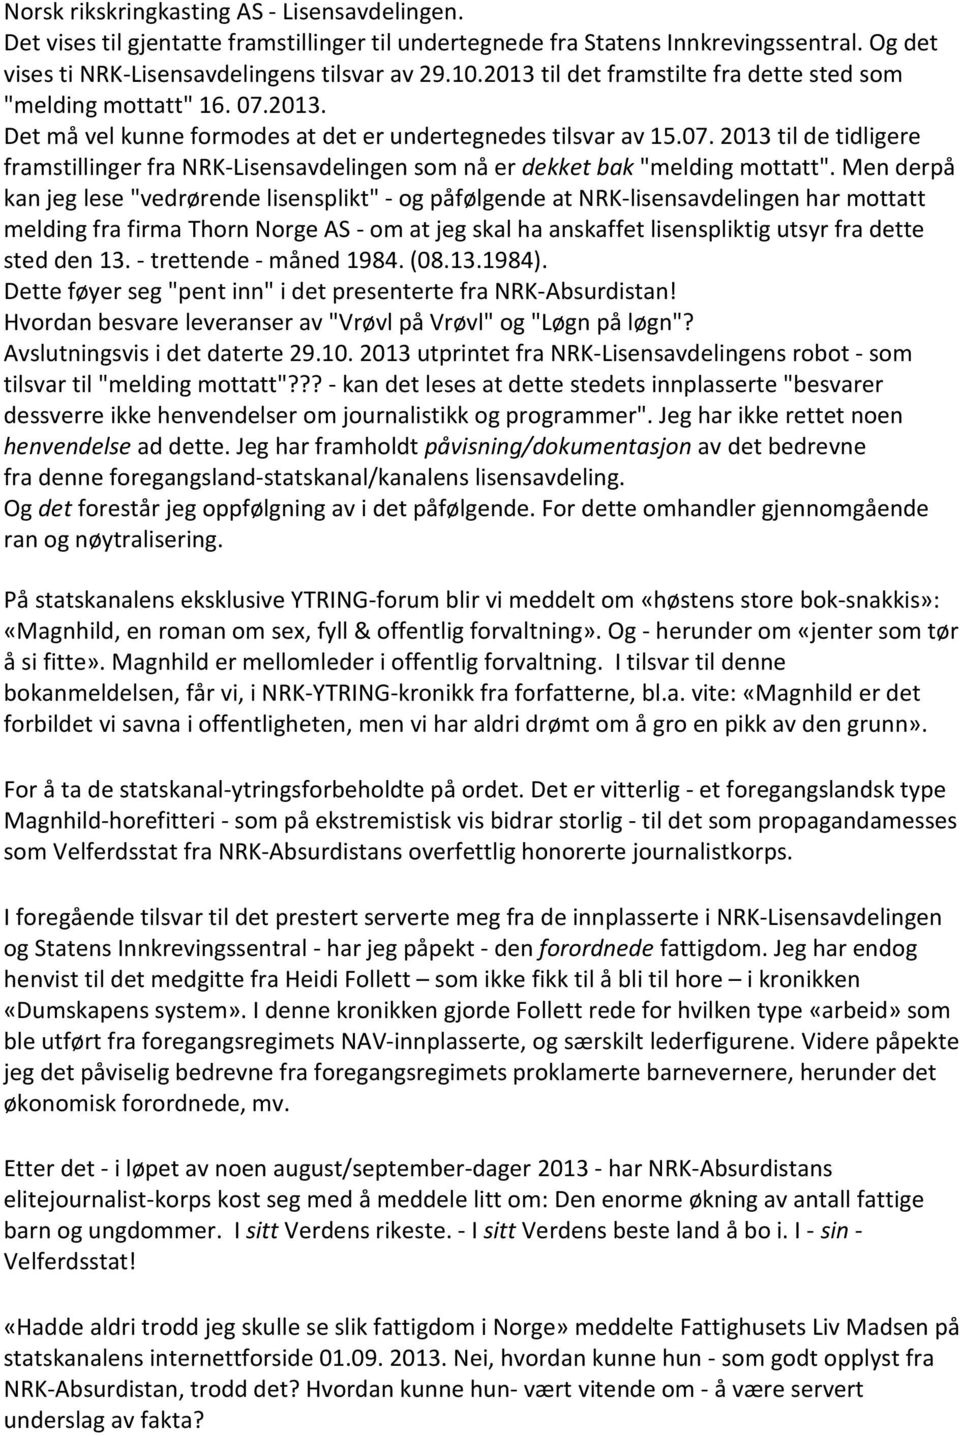 Men derpå kan jeg lese "vedrørende lisensplikt" - og påfølgende at NRK-lisensavdelingen har mottatt melding fra firma Thorn Norge AS - om at jeg skal ha anskaffet lisenspliktig utsyr fra dette sted